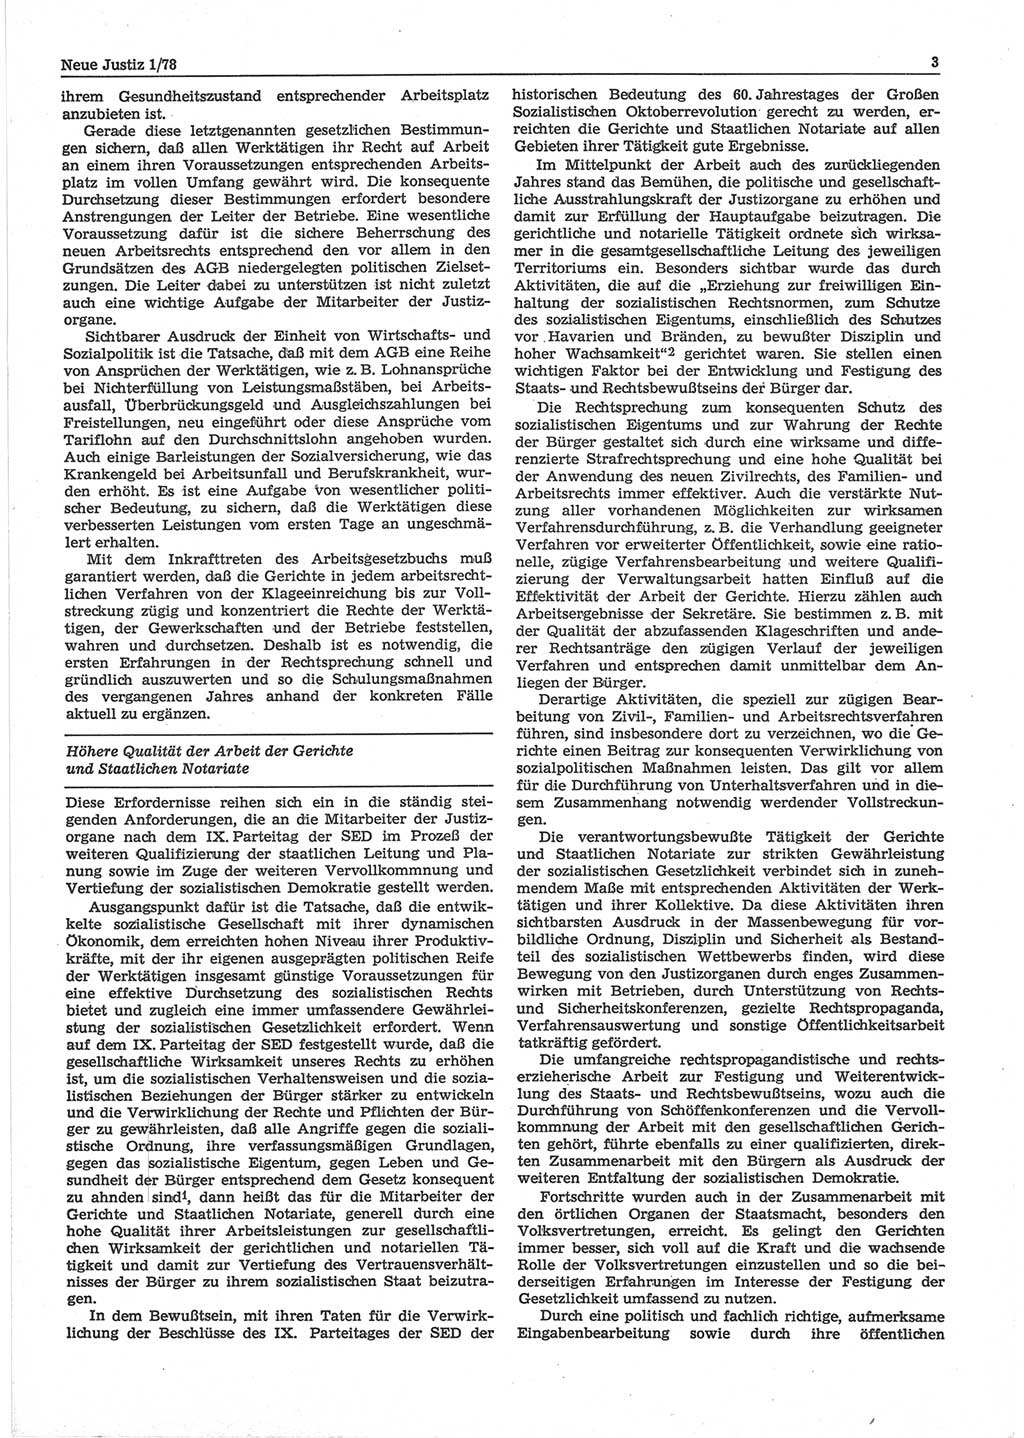 Neue Justiz (NJ), Zeitschrift für sozialistisches Recht und Gesetzlichkeit [Deutsche Demokratische Republik (DDR)], 32. Jahrgang 1978, Seite 3 (NJ DDR 1978, S. 3)